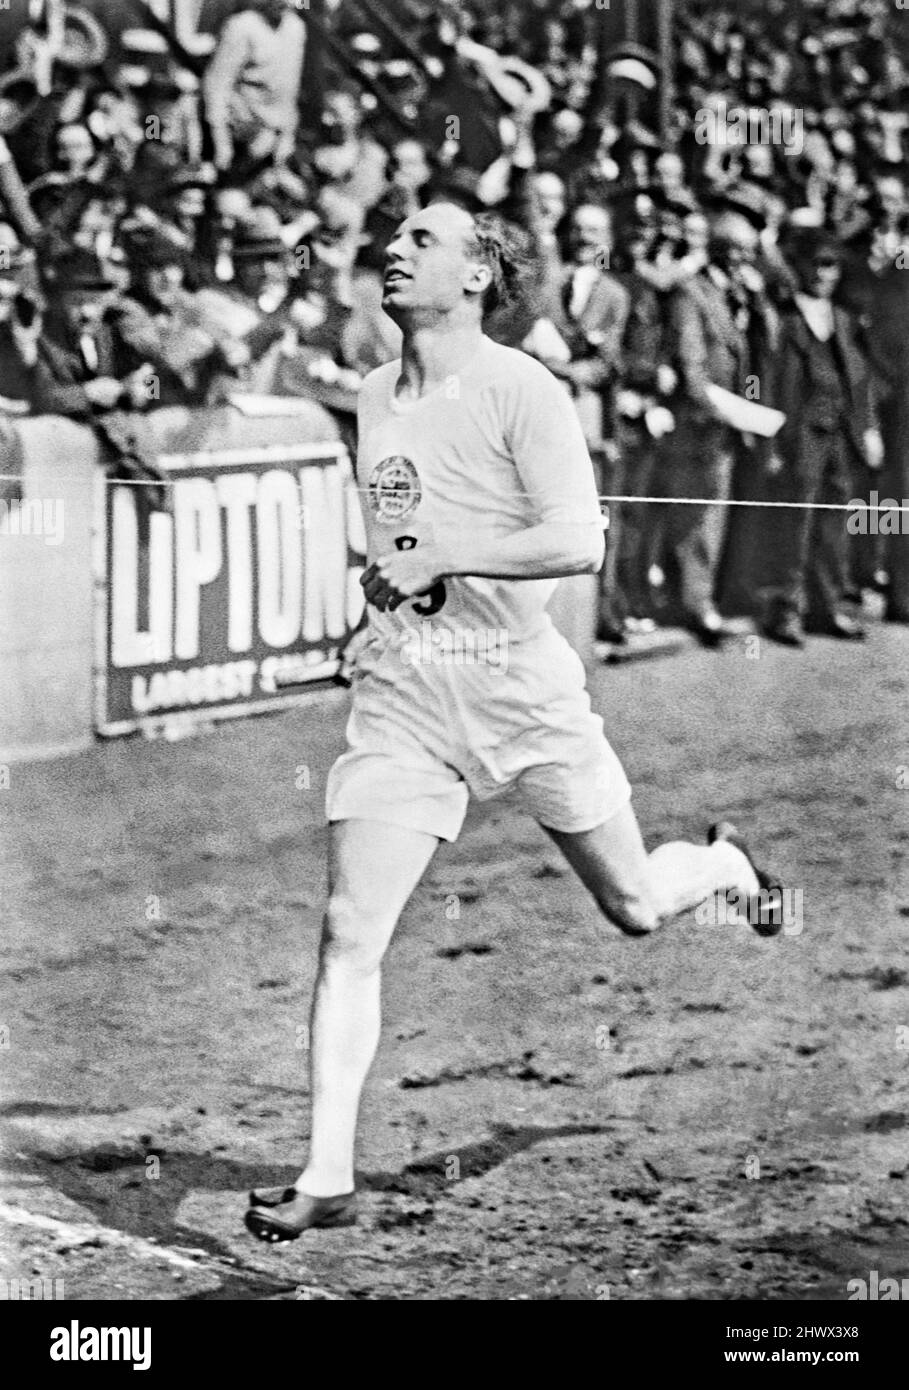 Der schottische Olympiateilnehmer Eric Liddell gewann die 1-Meilen-Staffel von British Empire gegen USA beim International Athletics Meeting, das am Samstag, den 19. Juli 1924, im Anschluss an die Olympischen Spiele in Paris, in der Stamford Bridge, London, stattfand. Aufgrund persönlicher Überzeugungen seines christlichen Glaubens weigerte sich Liddell bei den Olympischen Spielen 1924 bekanntermaßen, seine bevorzugten 100 Meter zu laufen, weil das Rennen an einem Sonntag stattfand. Stattdessen bestritt er das 400-Meter-Rennen, das er gewann. 1925 kehrte Liddell nach China zurück (wo er geboren wurde) und diente dort bis zu seinem Tod 1945 in einem japanischen zivilen Internierungslager als Missionar. Stockfoto